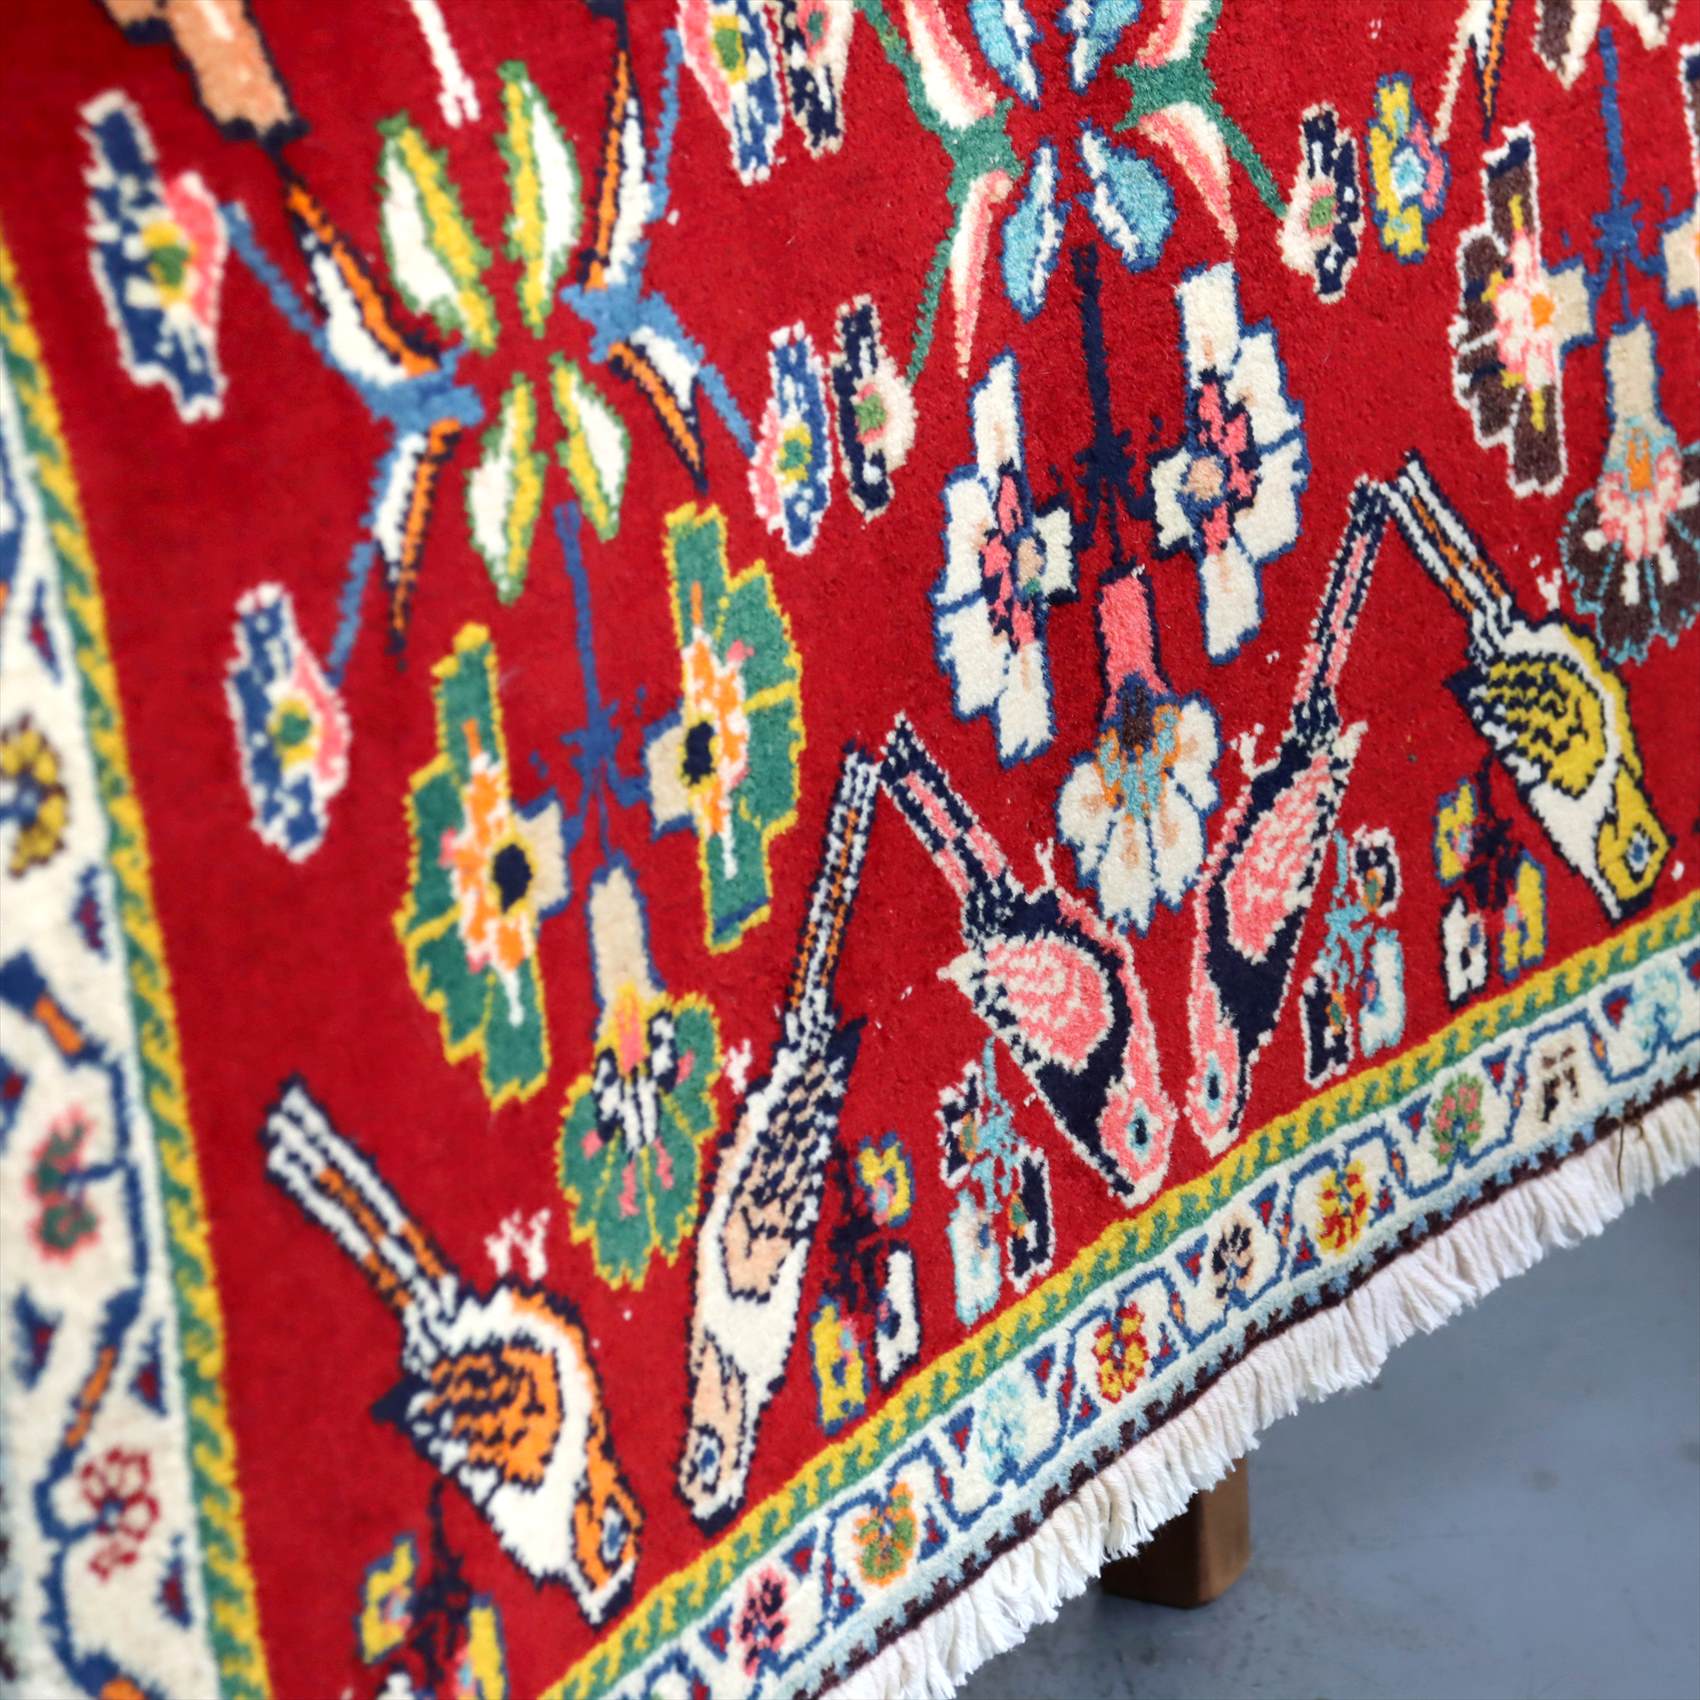 ポシュティ イラン カシュカイ族 遊牧民の手織りラグ 65×65cm レッド 鳥と花のデザイン